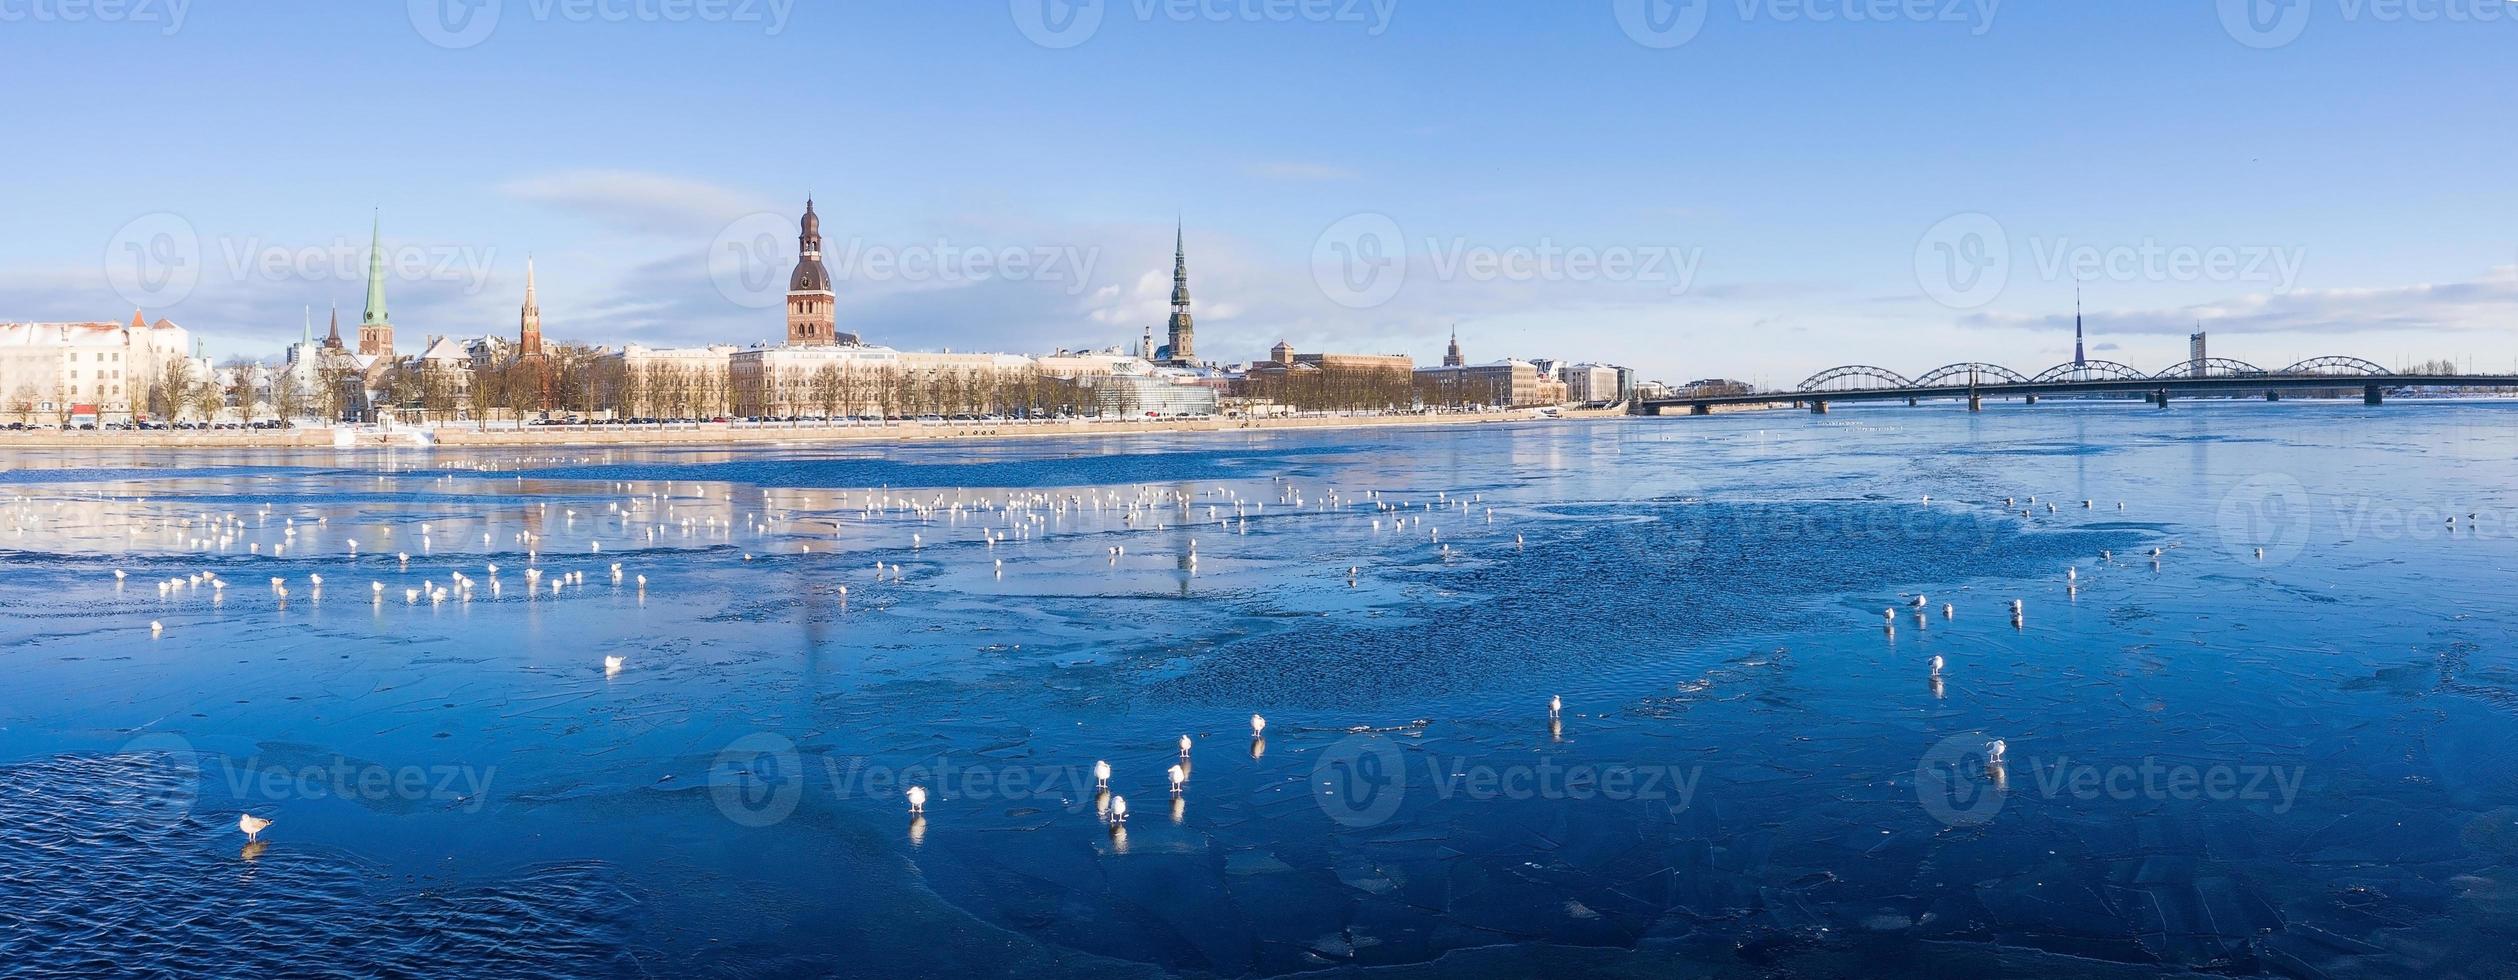 belle vue sur la rivière gelée avec des mouettes assises sur la glace par la vieille ville de riga en lettonie. photo